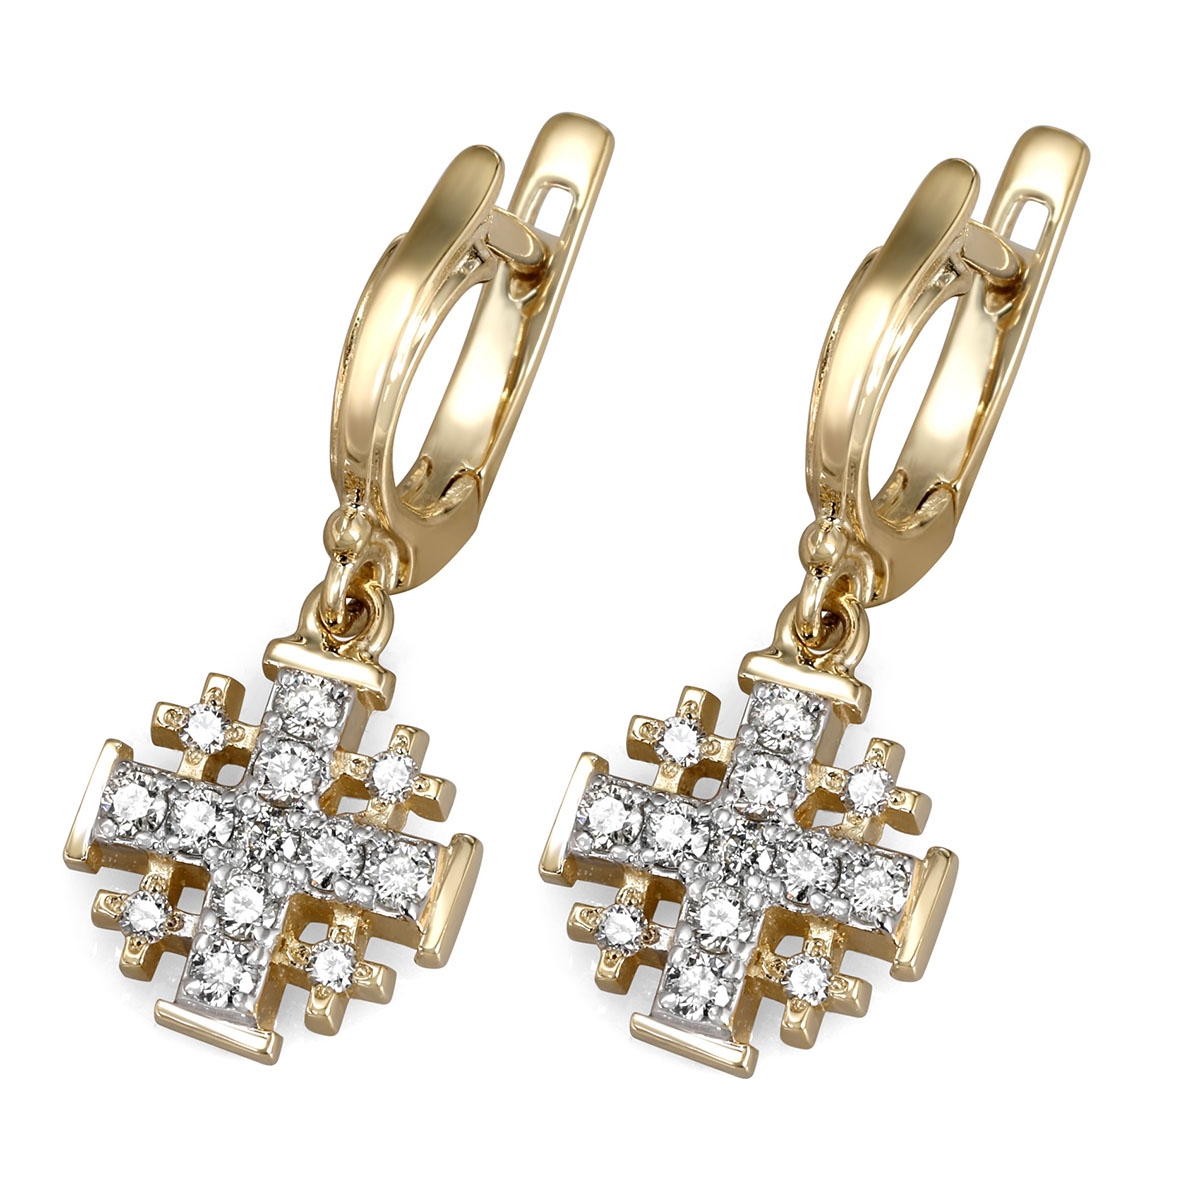 Medieval Jerusalem Cross Earrings - The Silver Acorn